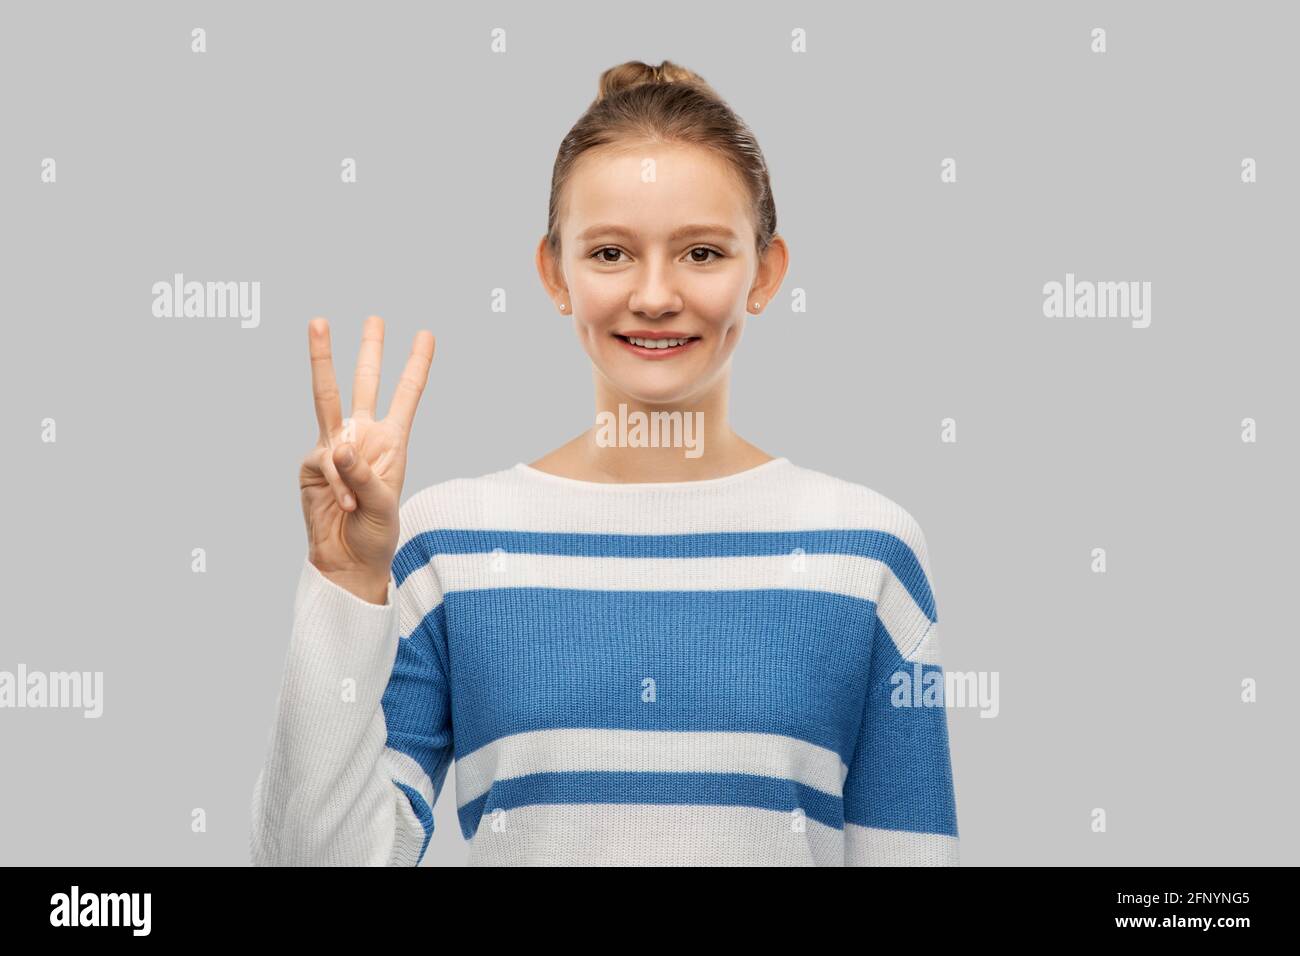 teen girl using 3 fingers